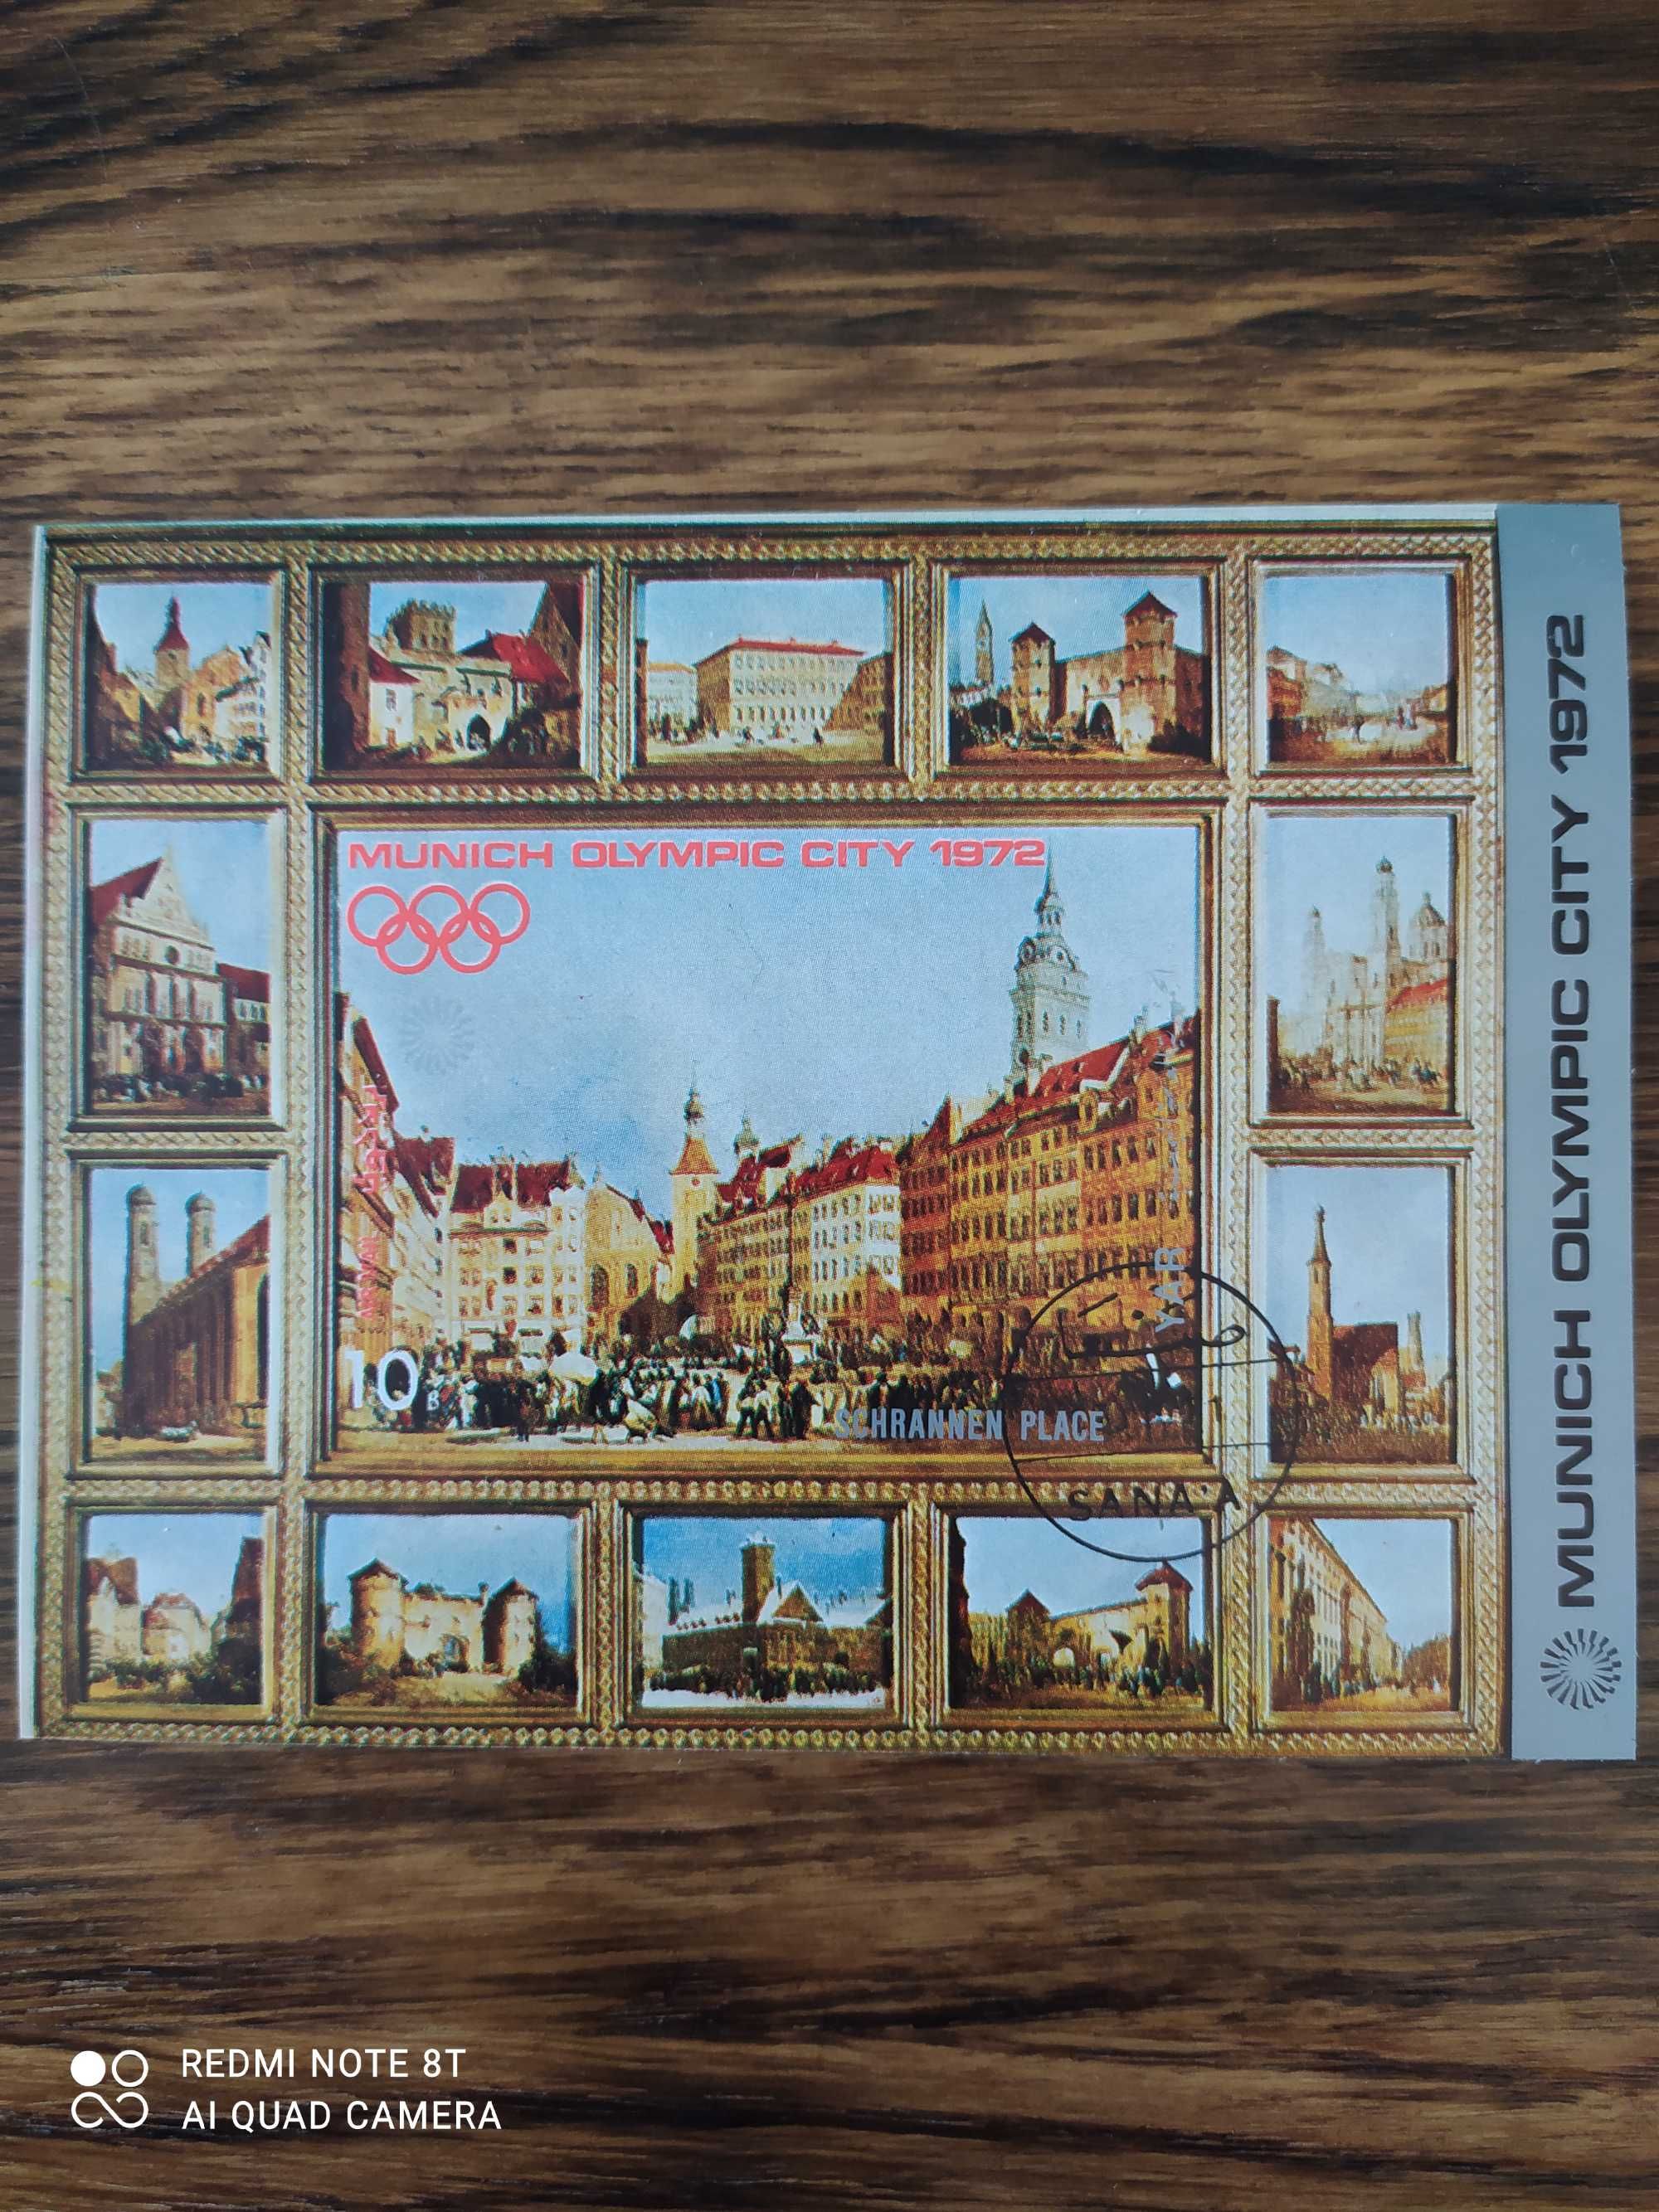 Znaczek pocztowy 1970 JEMEN – budynki w olimpijskim mieście Monachium